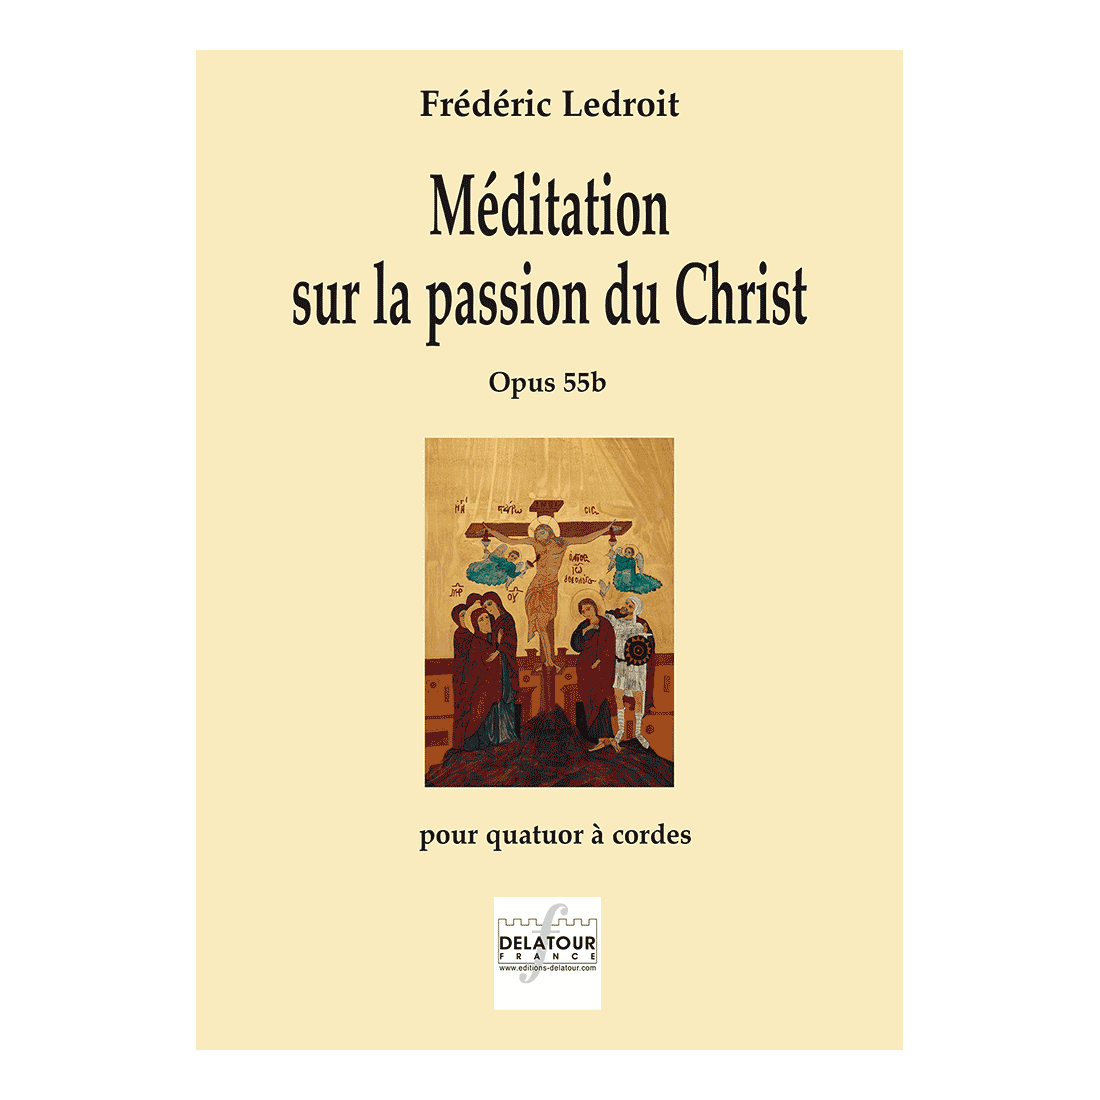 Méditation sur la passion du Christ for string quartet